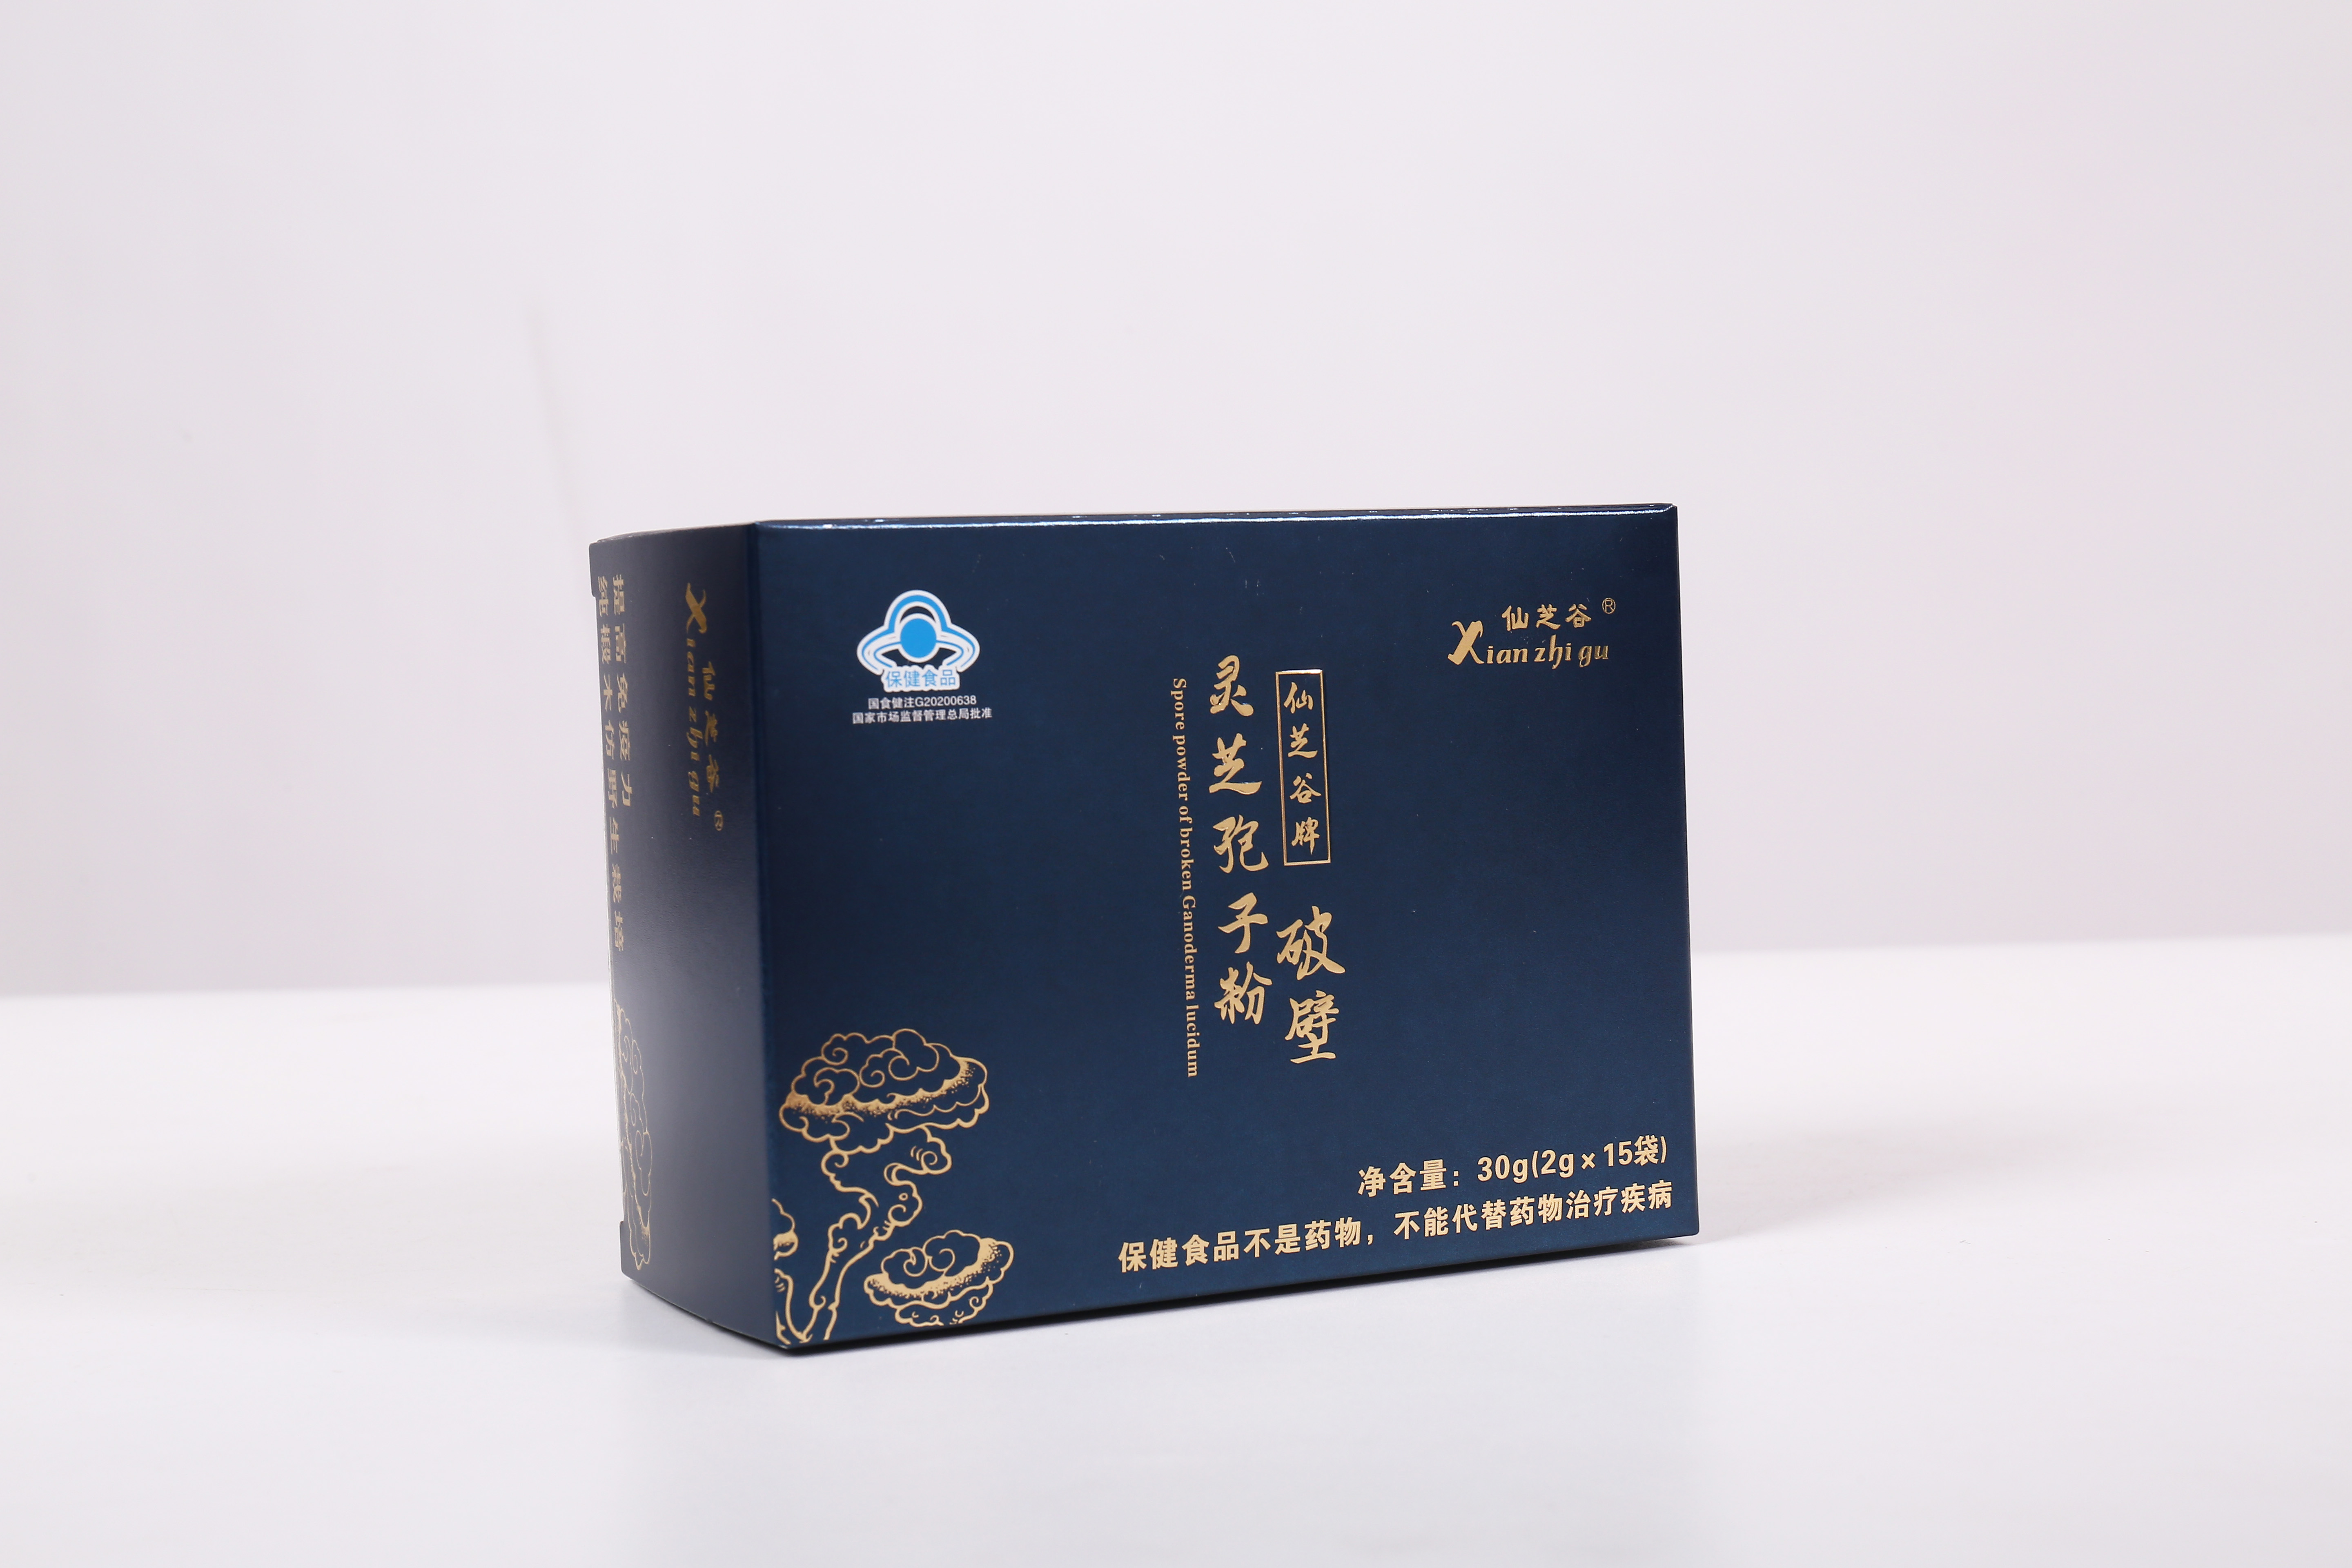 仙芝谷牌破壁灵芝孢子粉礼盒 2g×15包×4盒/礼盒(图3)